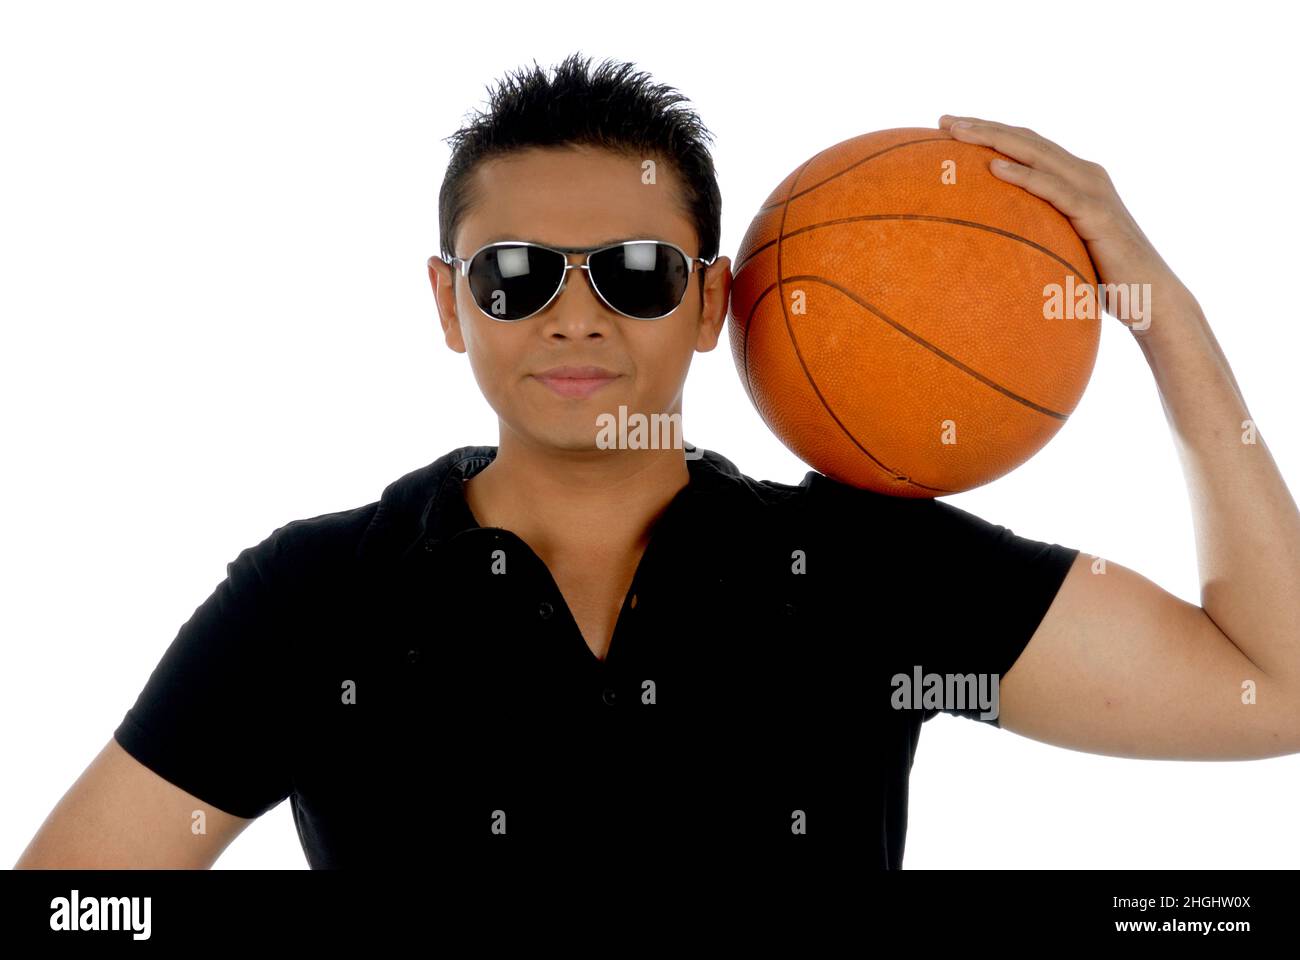 Mumbai; Maharashtra; Inde- Asie; 26 décembre; 2009 - Jeune garçon indien posant avec fond blanc de basket-ball Banque D'Images